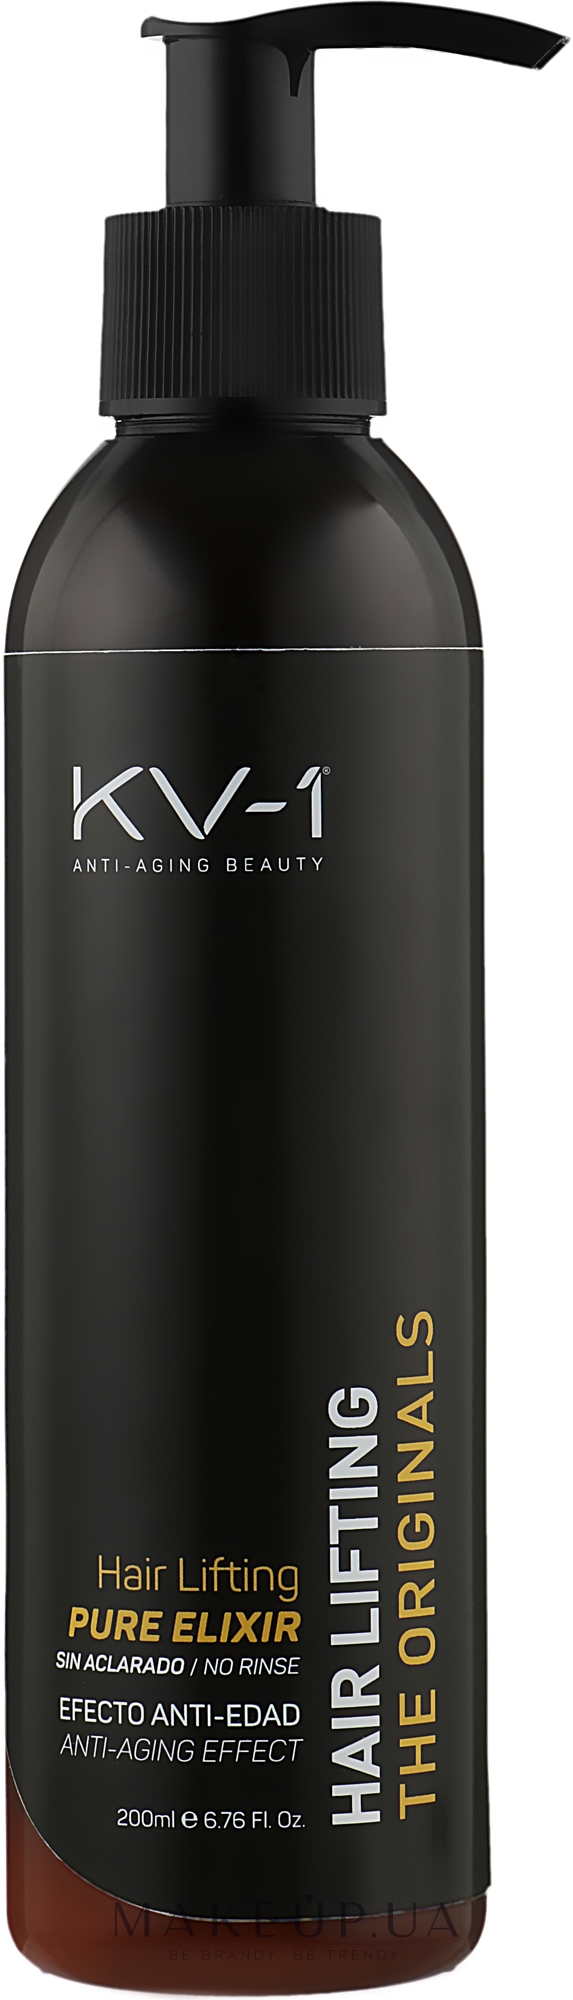 Несмываемый крем-лифтинг с маслом виноградных косточек - KV-1 The Originals Hair Lifting Pure Elixir Cream — фото 200ml